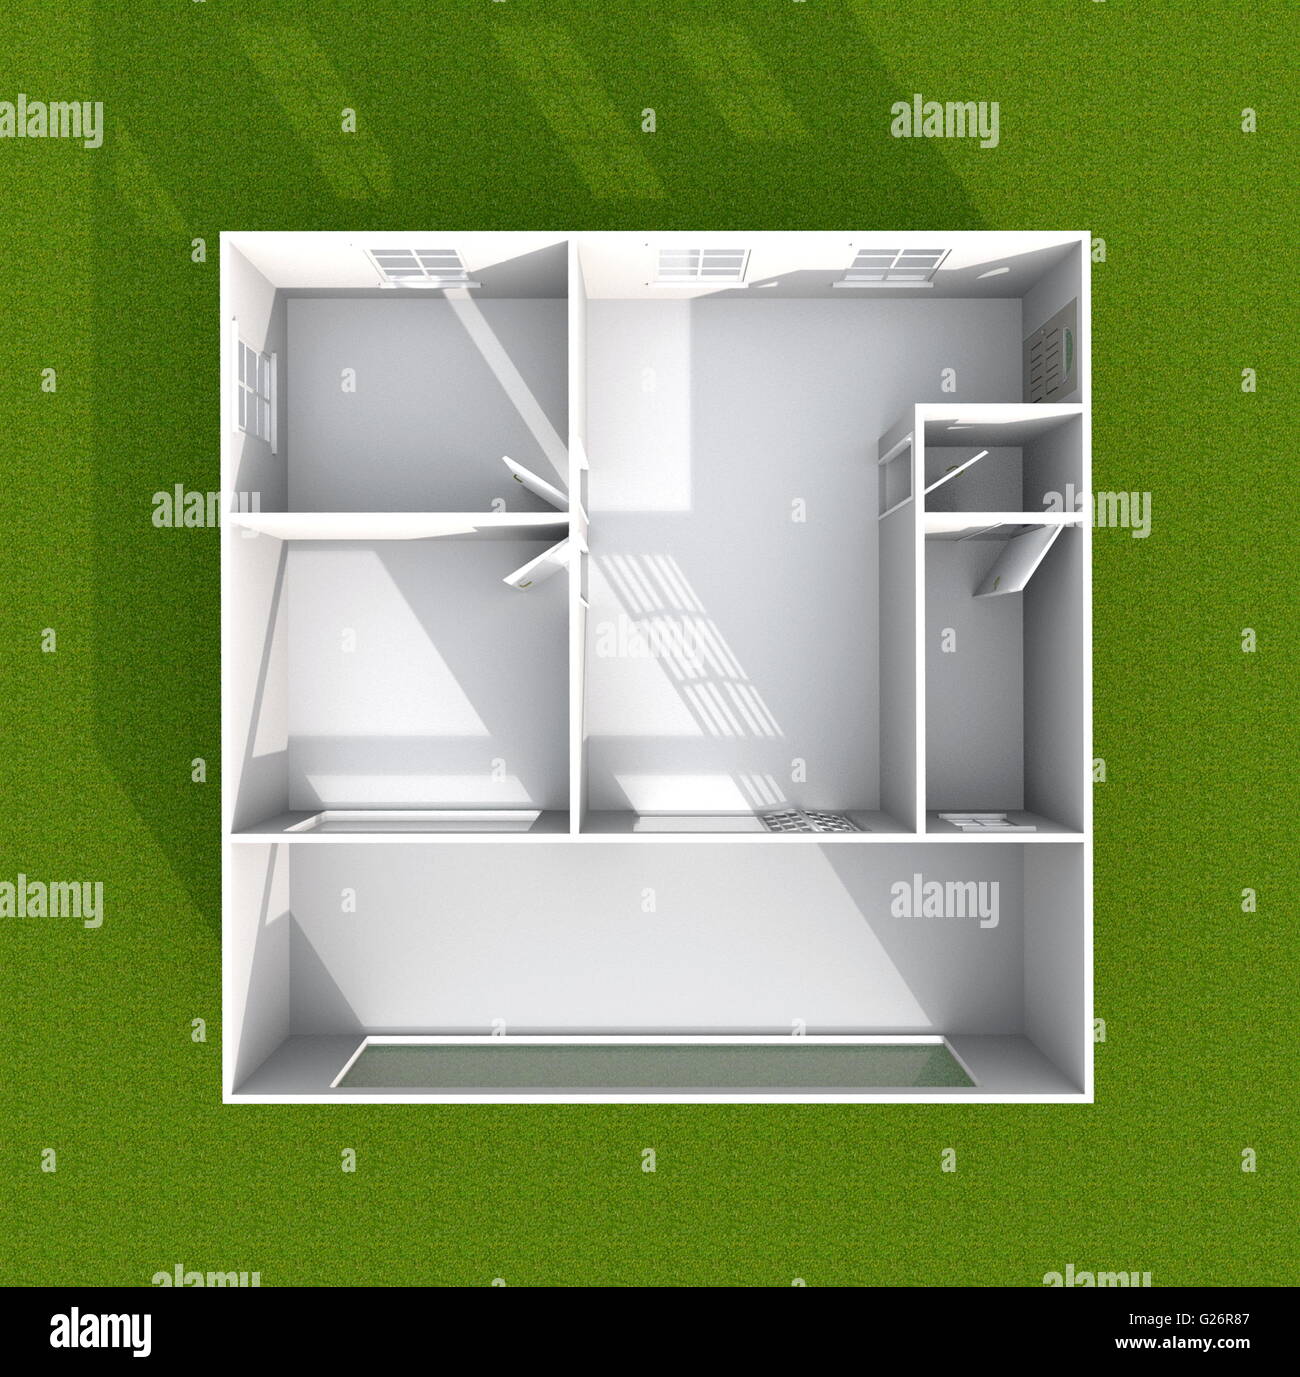 3D Interni rendering vista in pianta del vuoto home appartamento con giardino verde intorno: camera, bagno, camera da letto, cucina, soggiorno Foto Stock